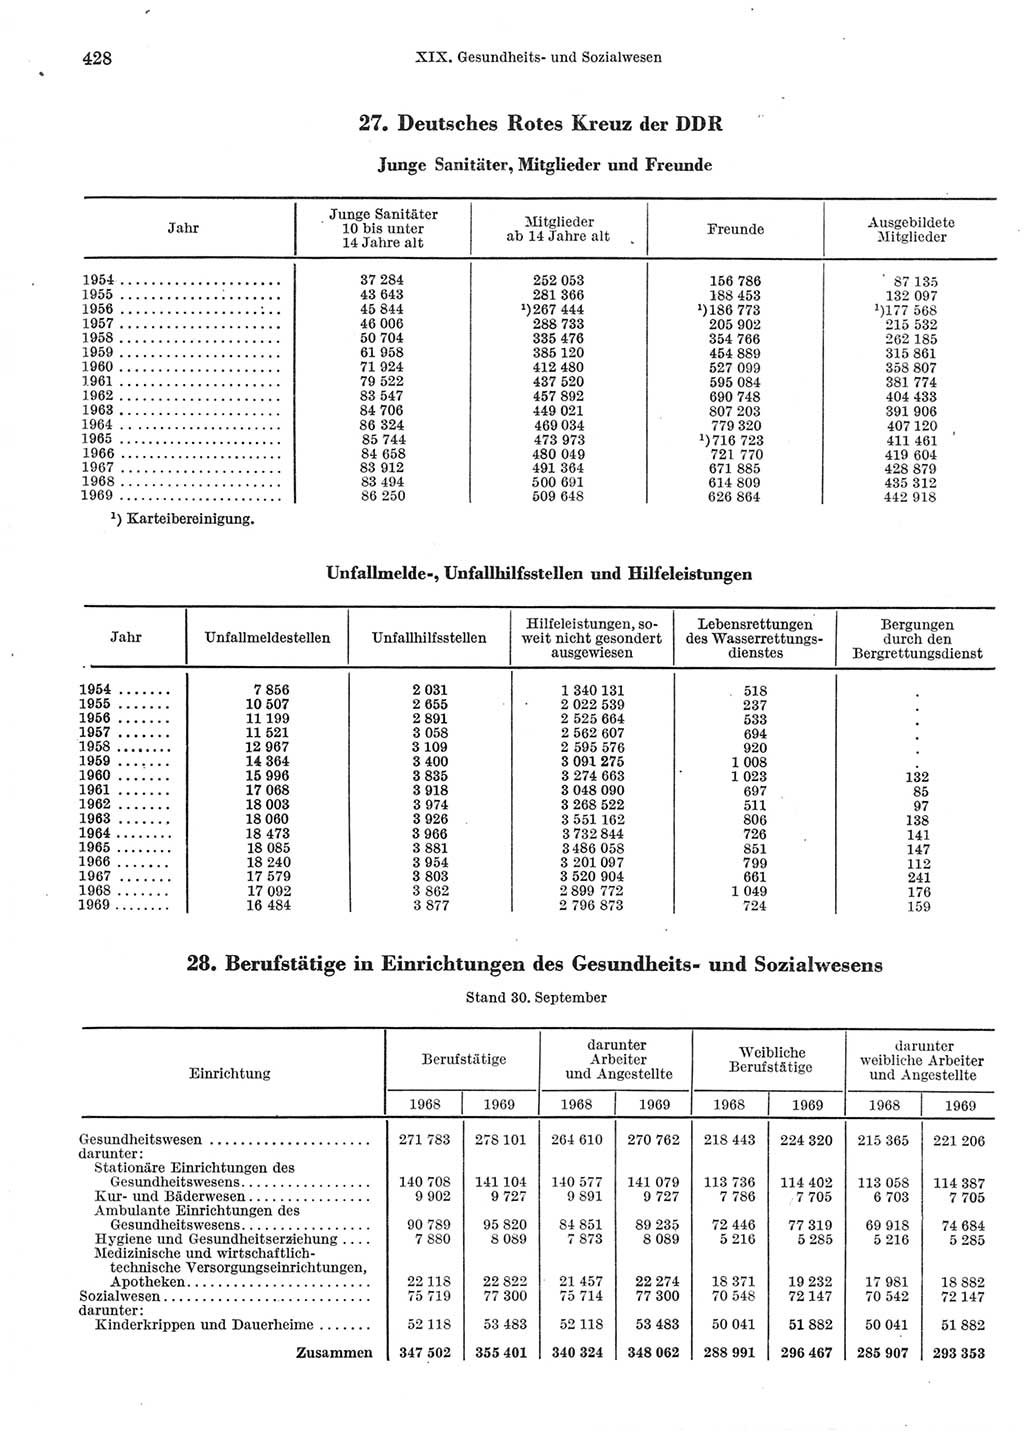 Statistisches Jahrbuch der Deutschen Demokratischen Republik (DDR) 1970, Seite 428 (Stat. Jb. DDR 1970, S. 428)